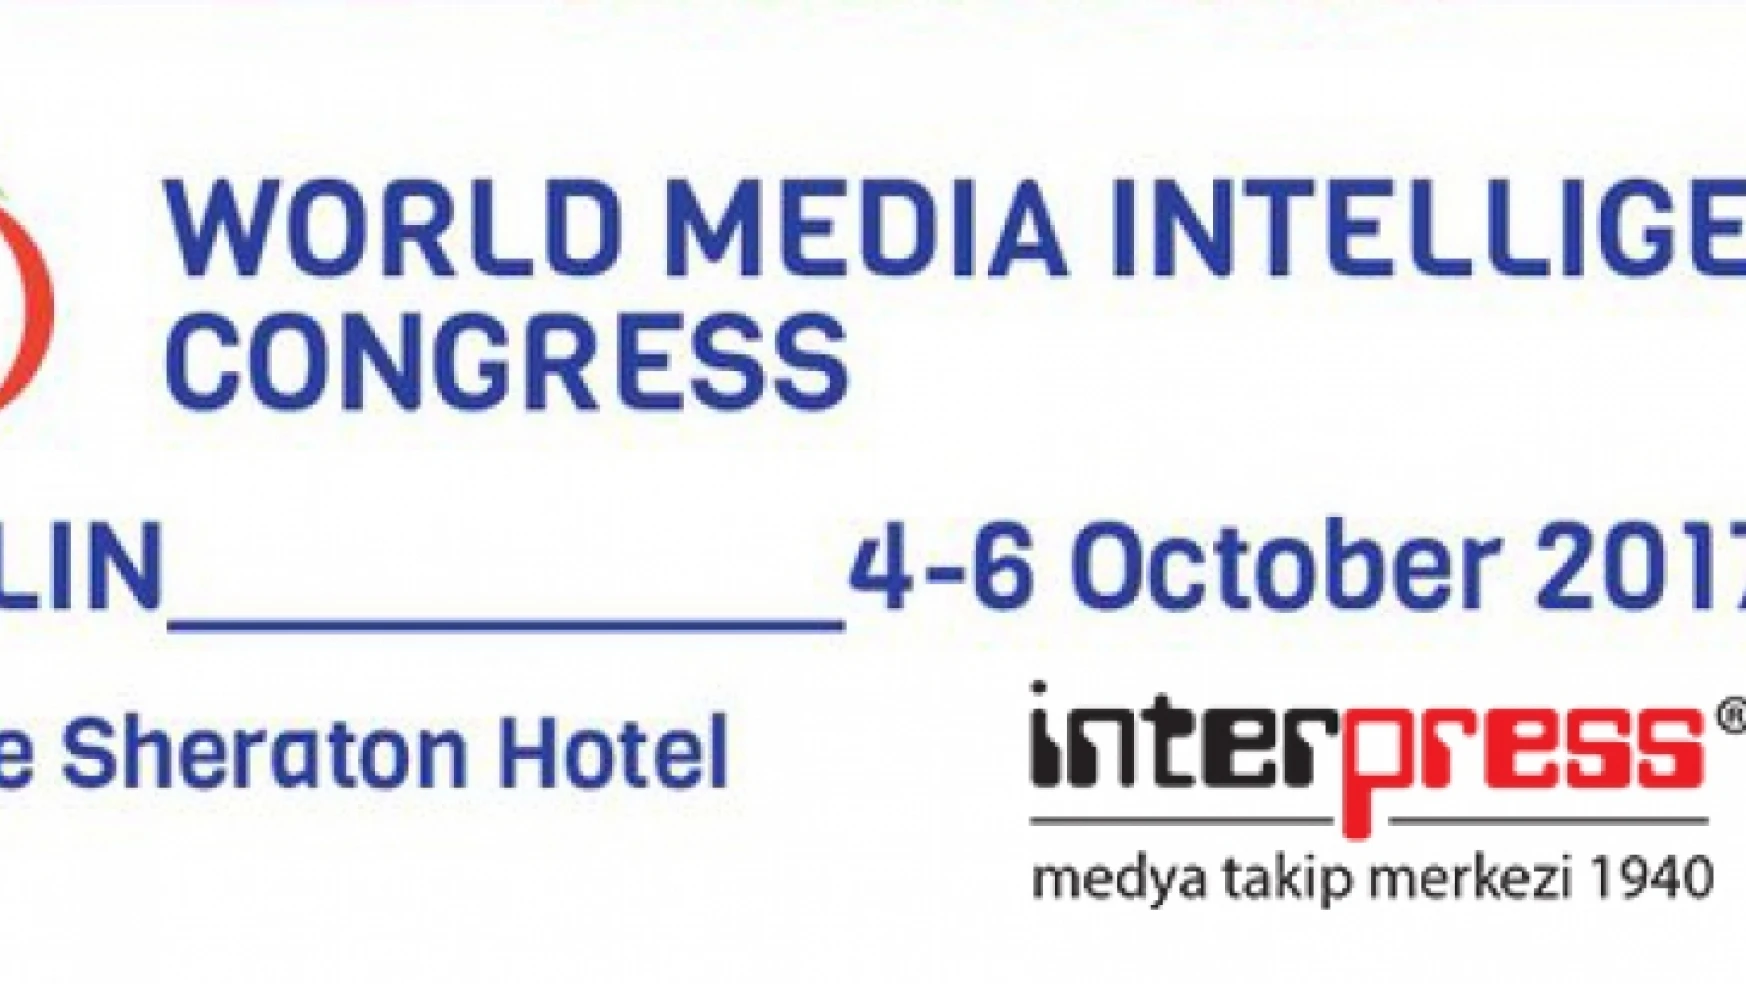 Interpress 49. Fıbep Dünya Medya Takip Kongresi İçin Berlin'de